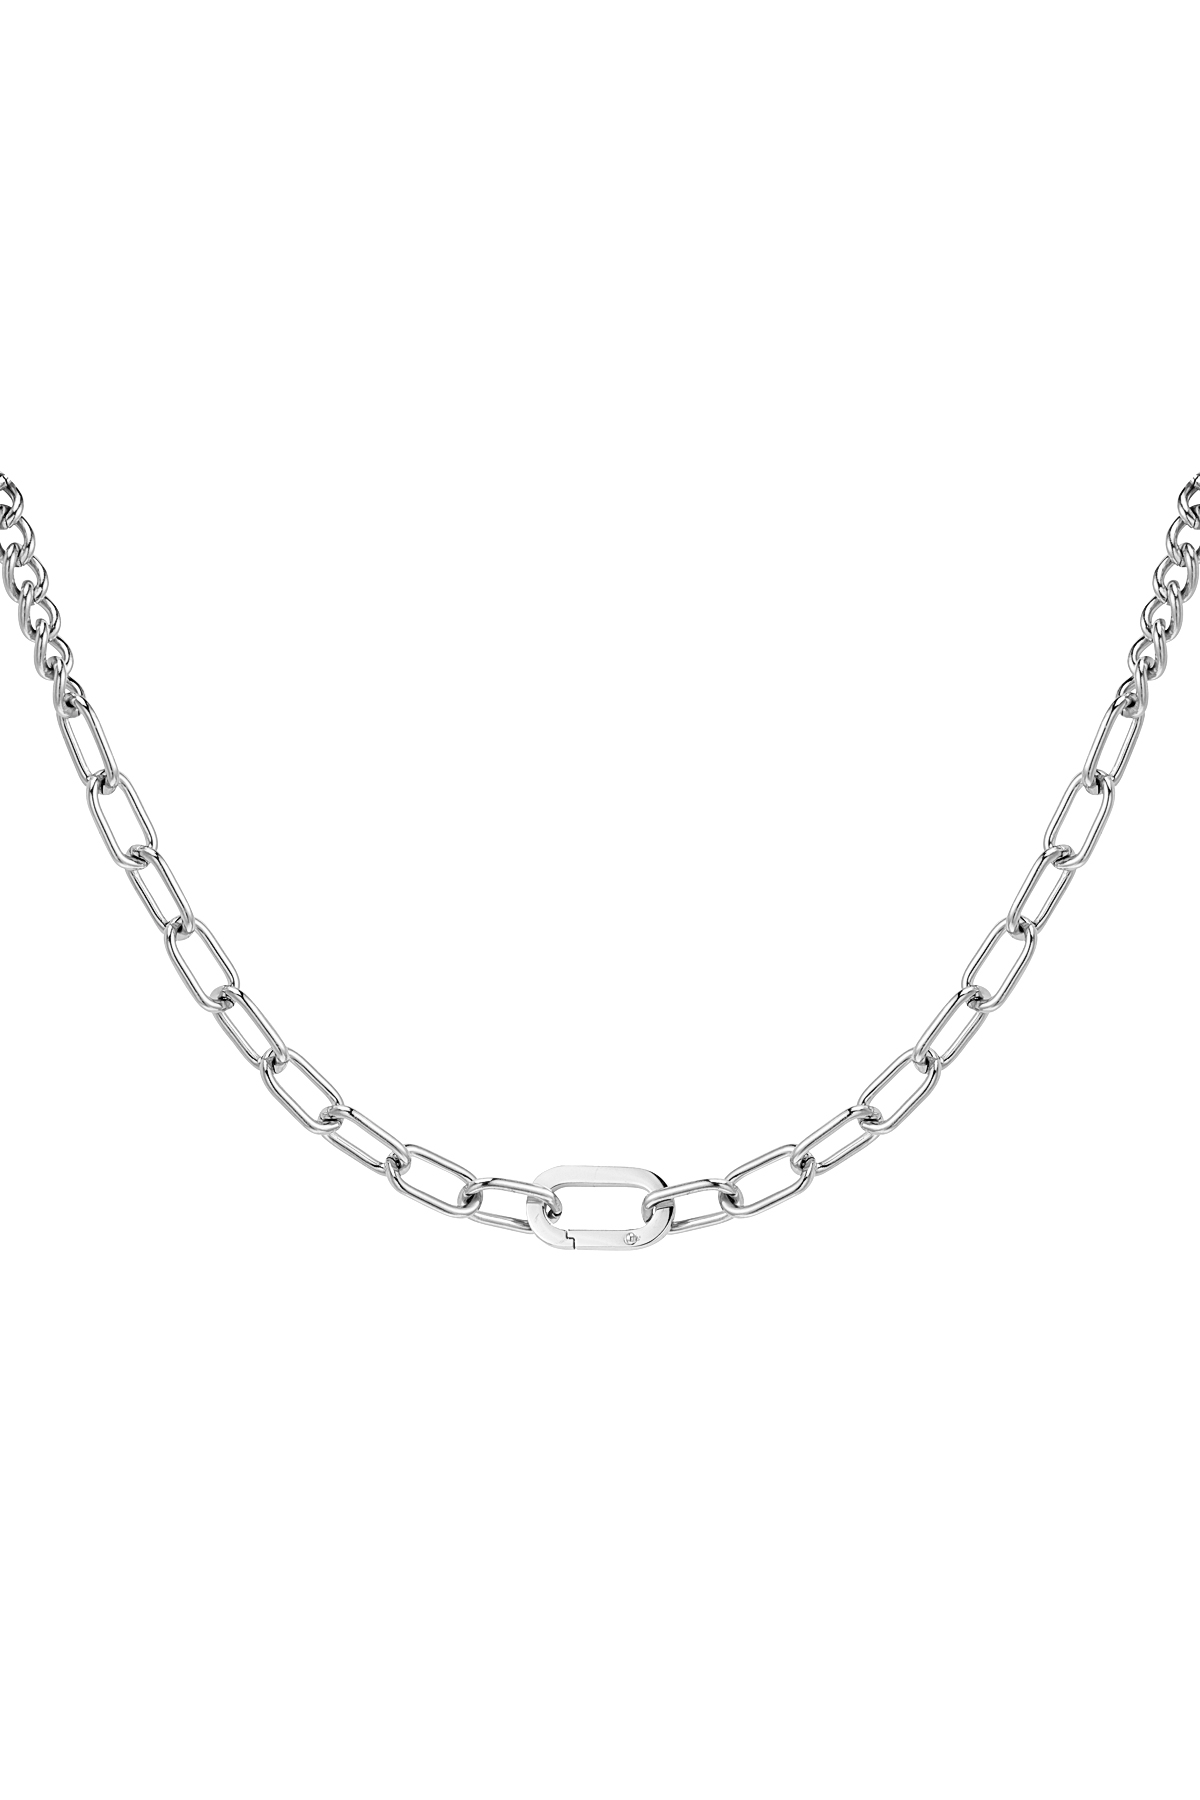 Klobige Halskette - Silberner Edelstahl h5 